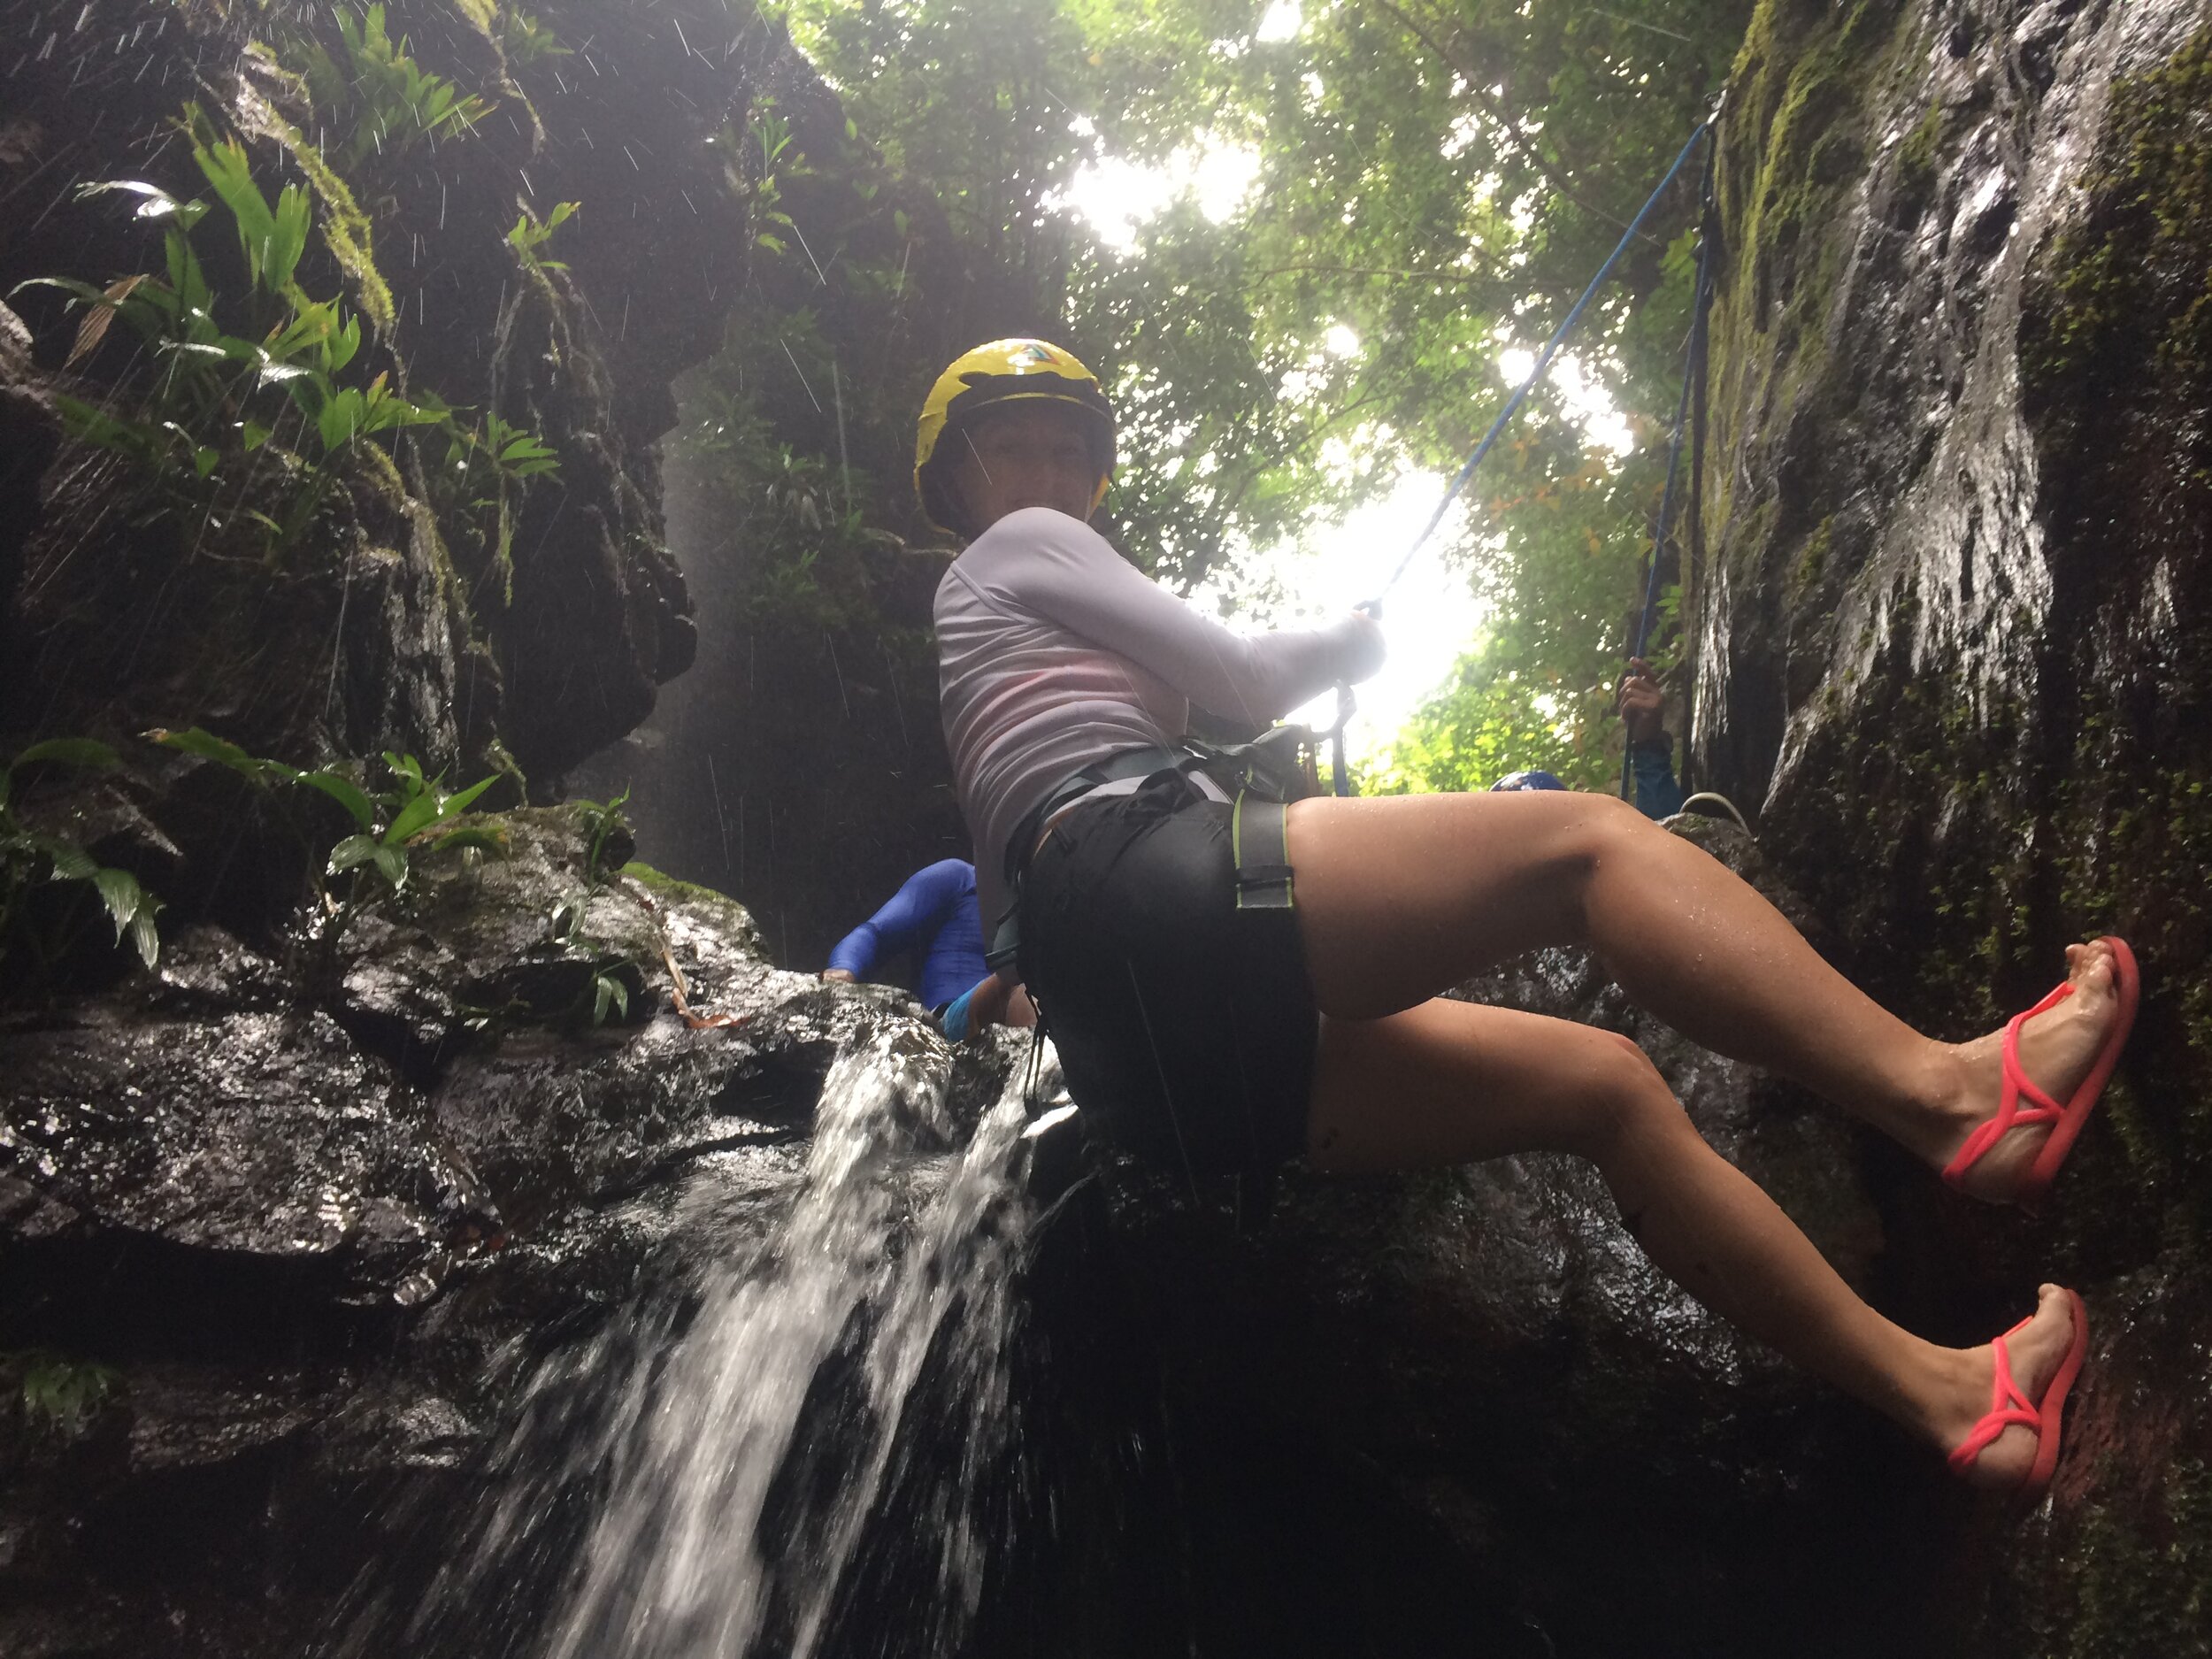 hondura-waterfalls-january-2020.JPG